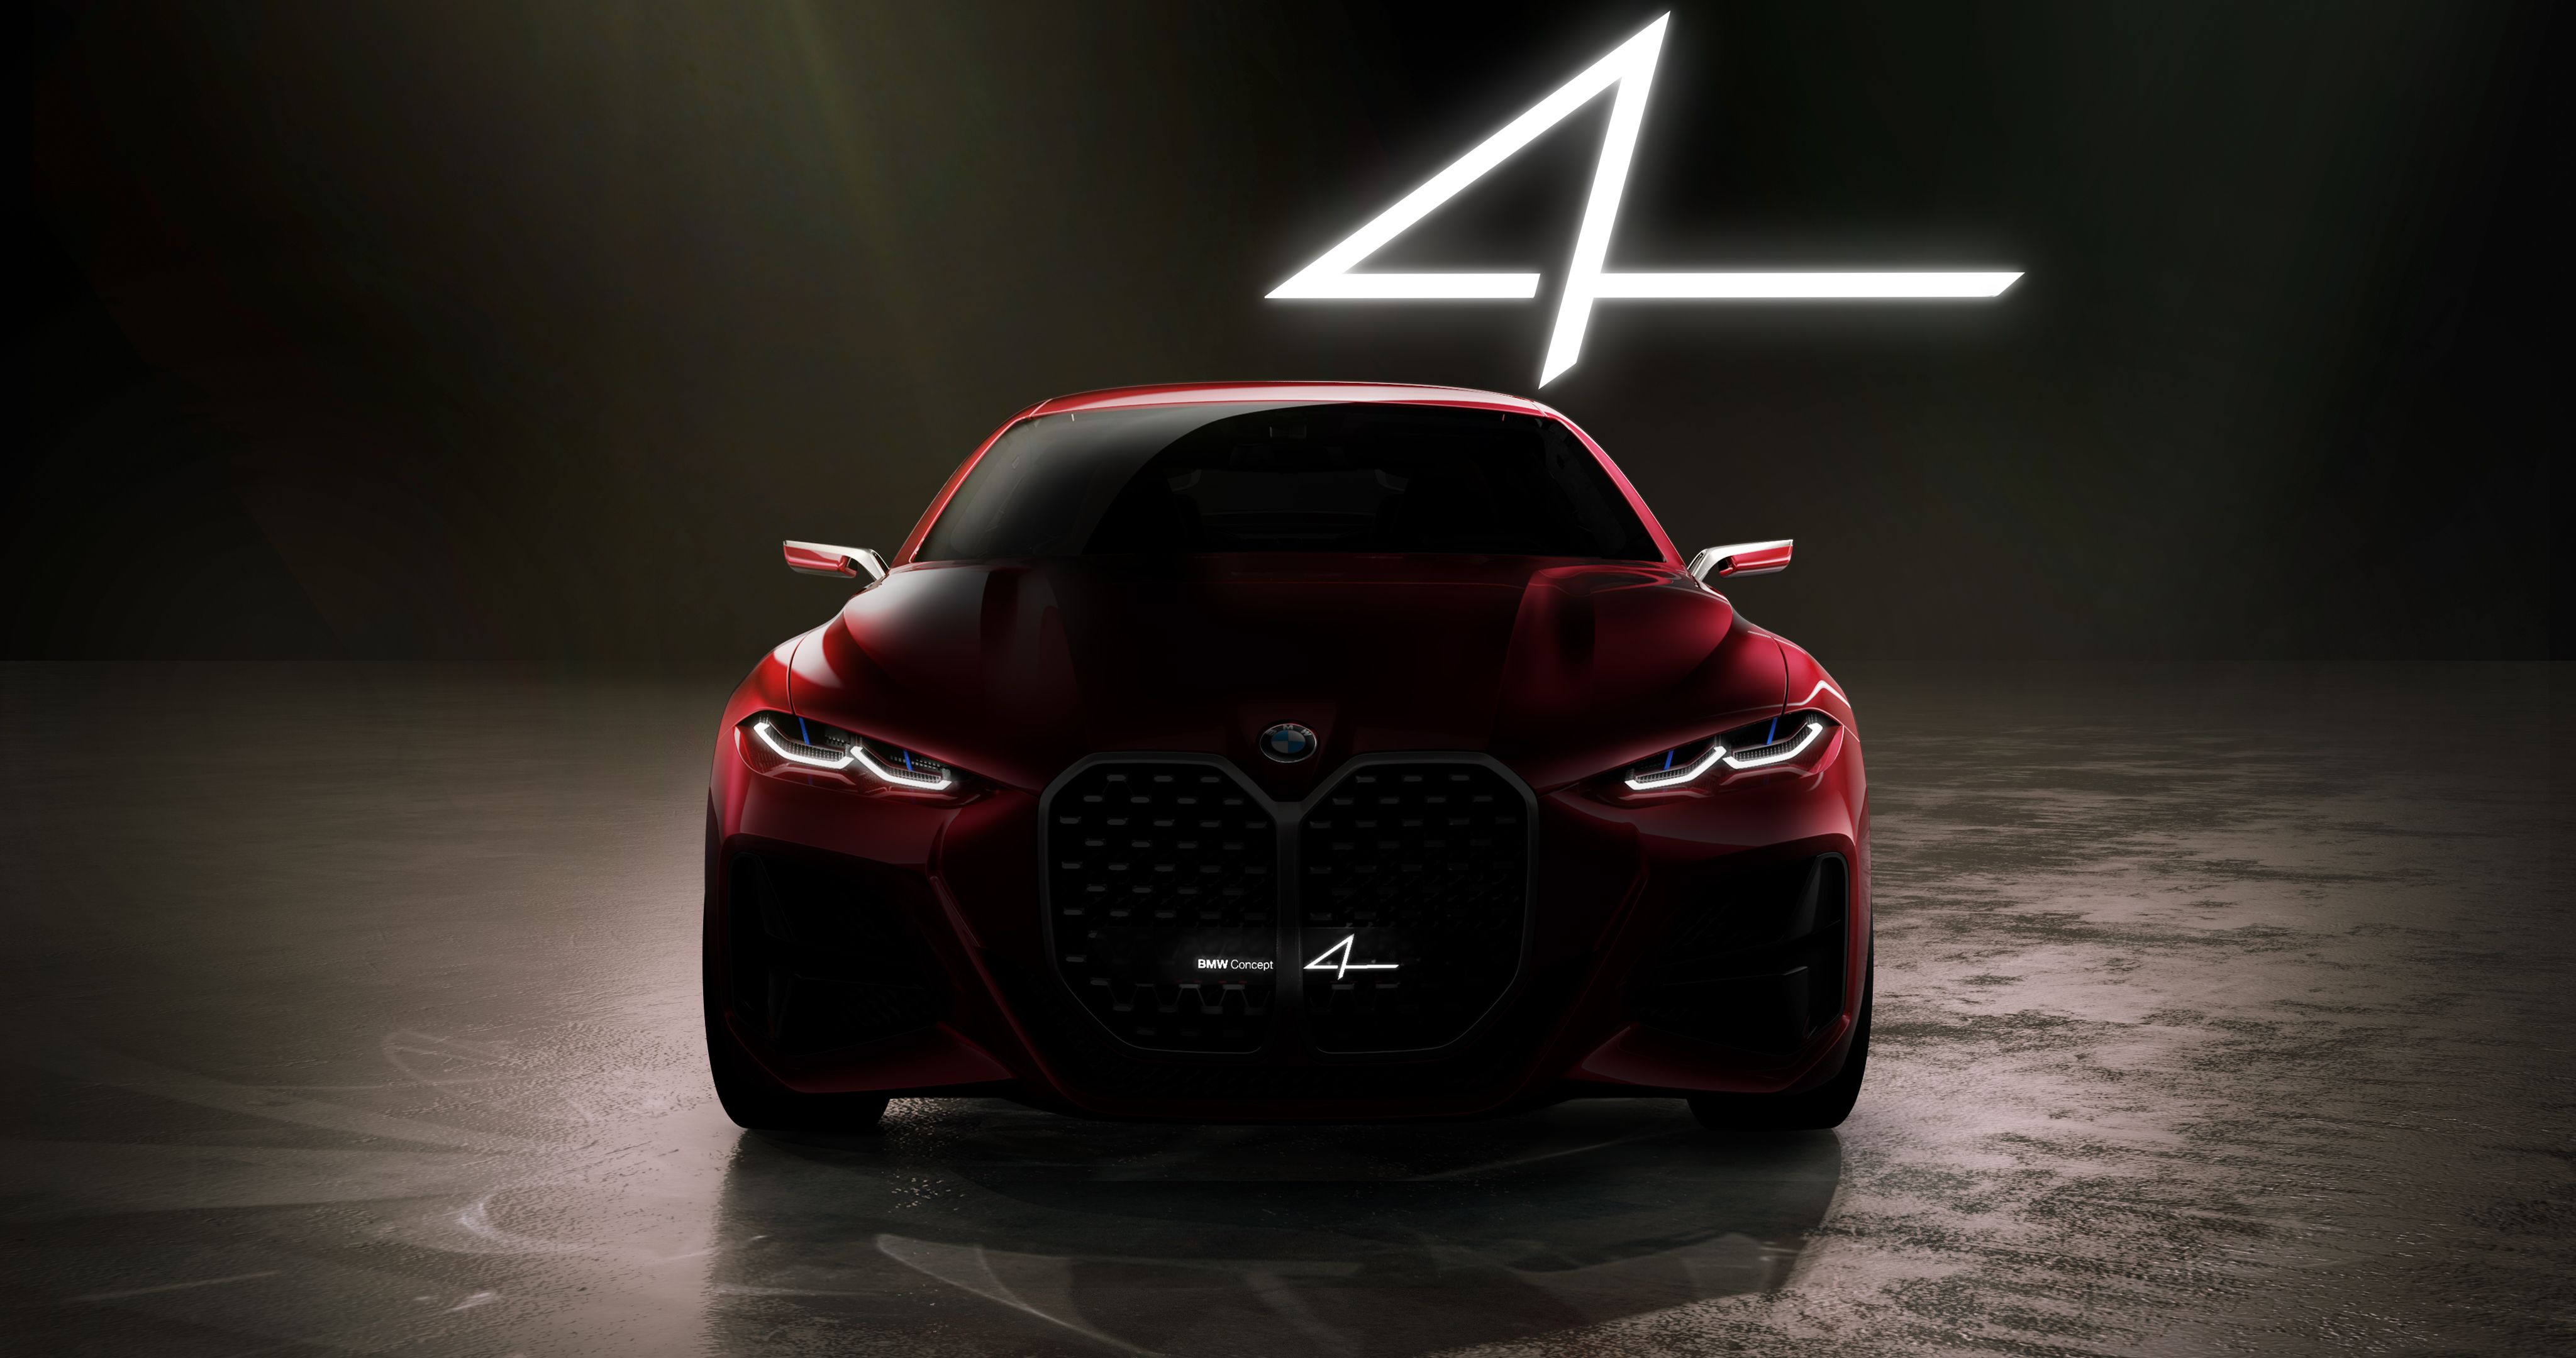 2019 BMW Concept 4